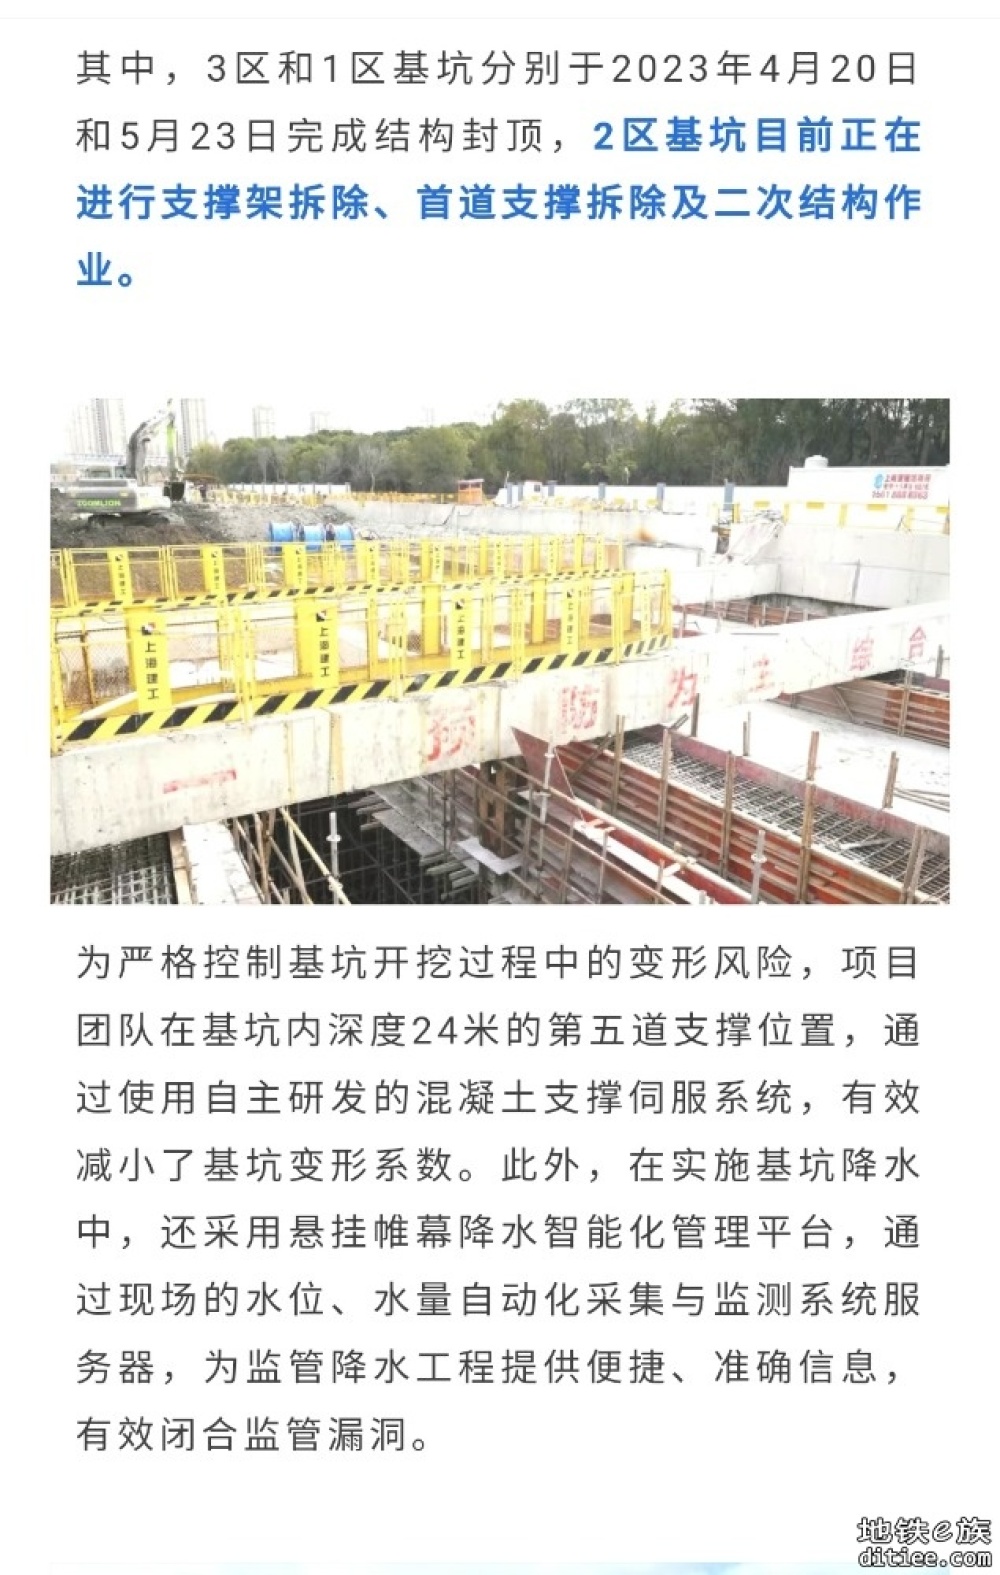 上海市域铁路机场联络线最新进展来了